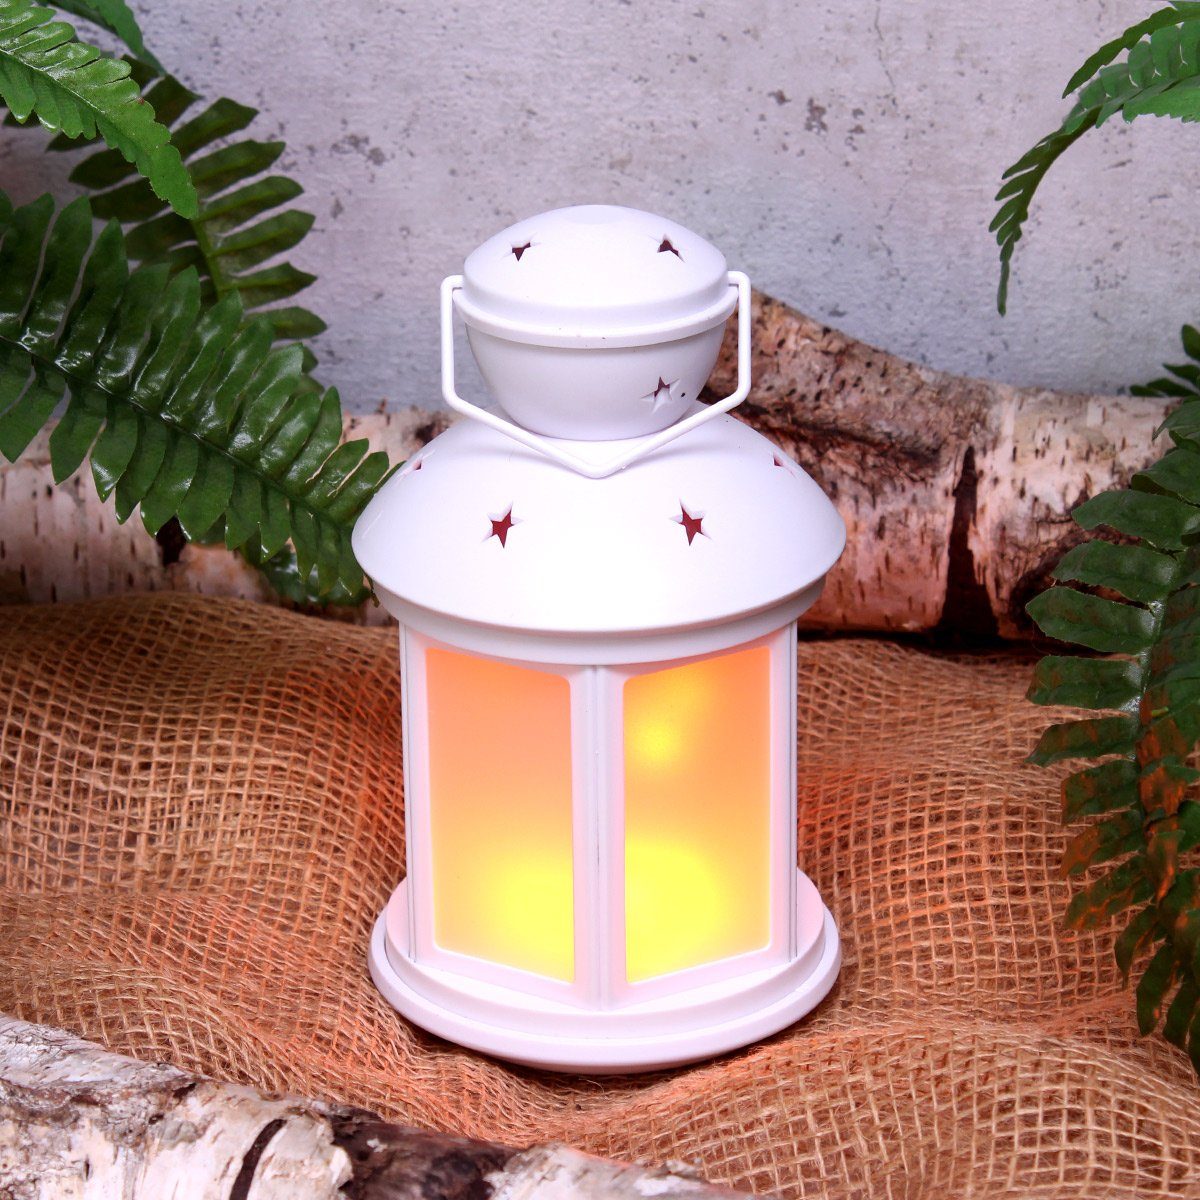 MARELIDA LED Laterne 22cm weiß, LED amber flackernd Flammeneffekt Laterne LED Classic, Dekolaterne mit